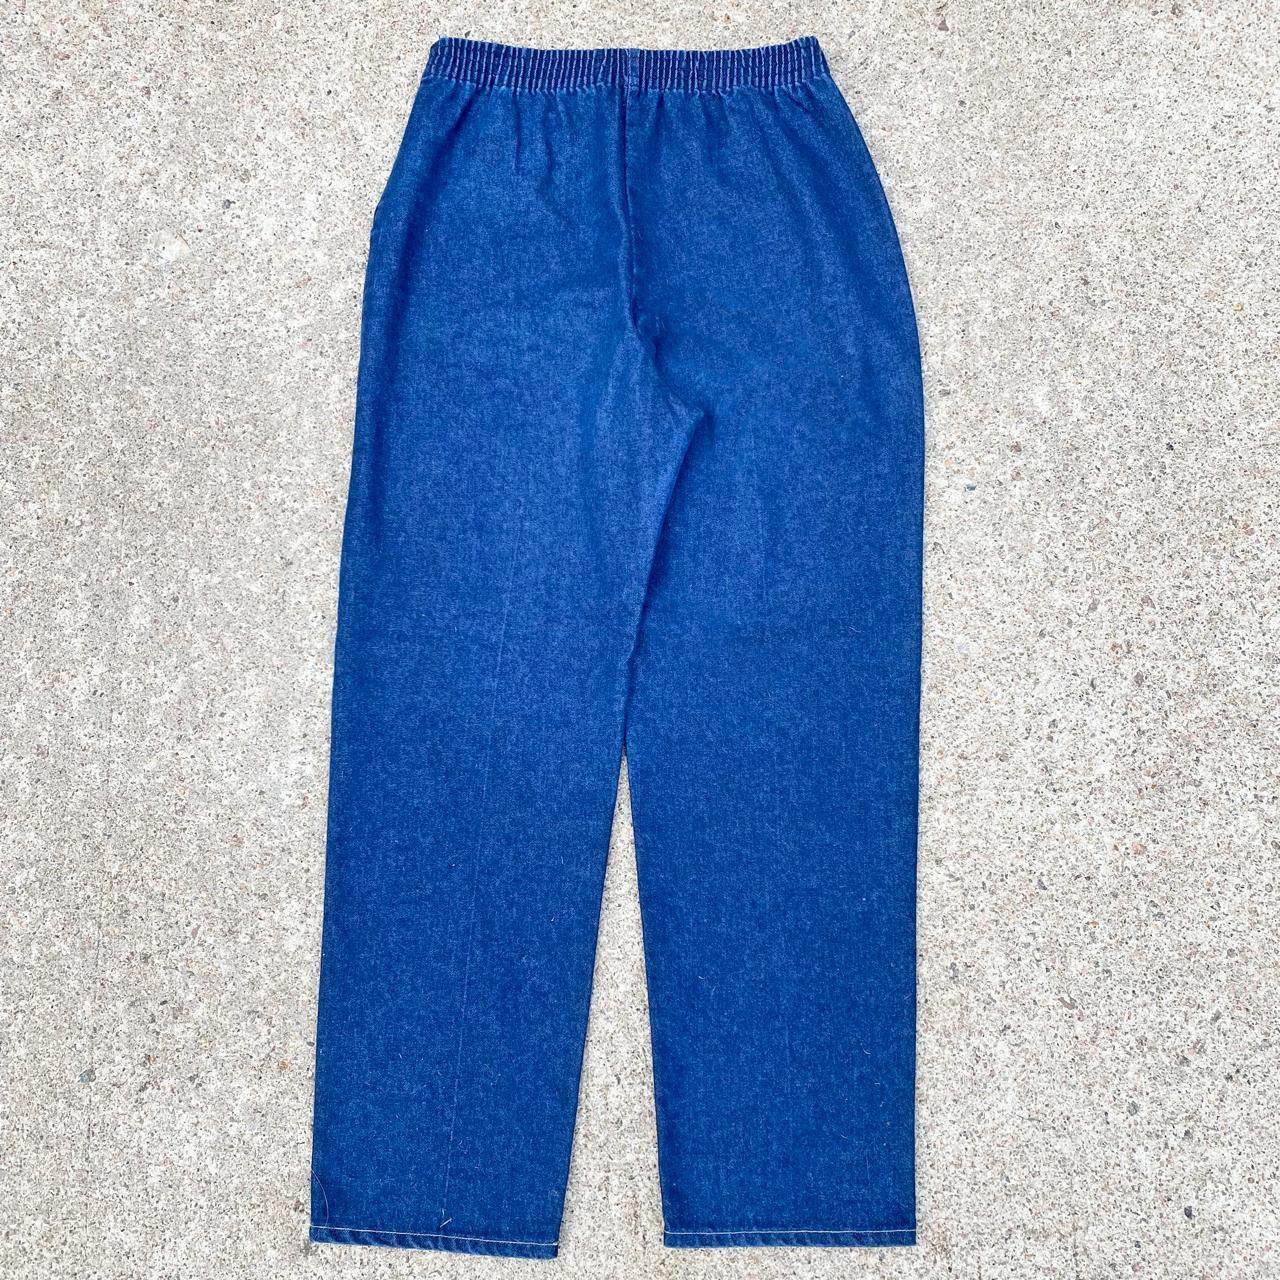 Sears Women's Blue Trousers (3)